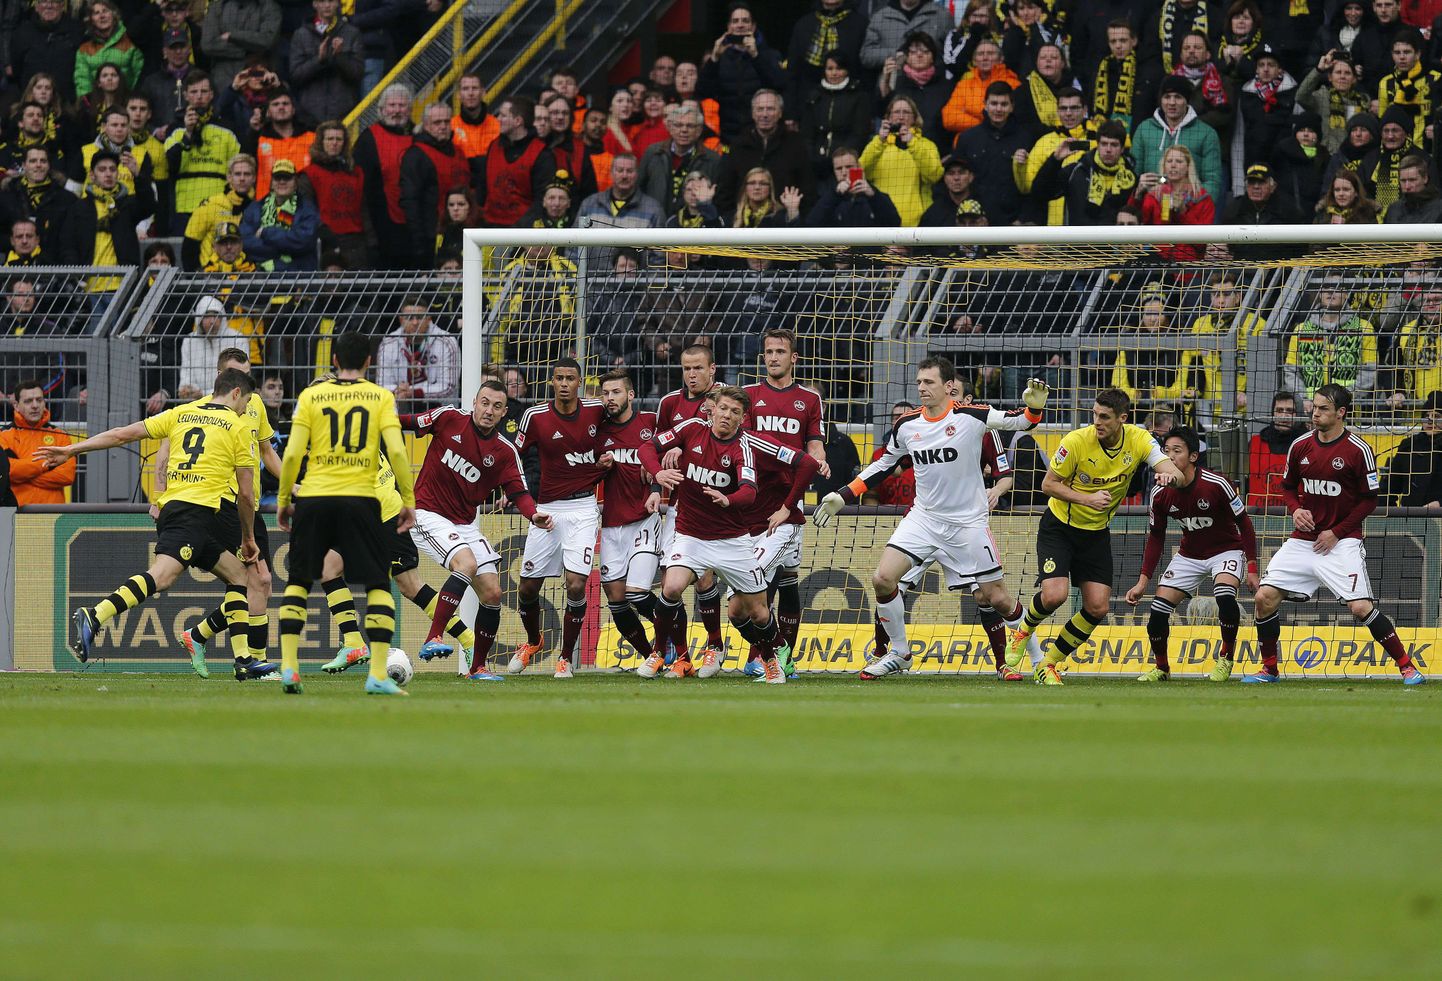 Nürnbergi mängijad (punases) kohtumises Dortmundi vastu